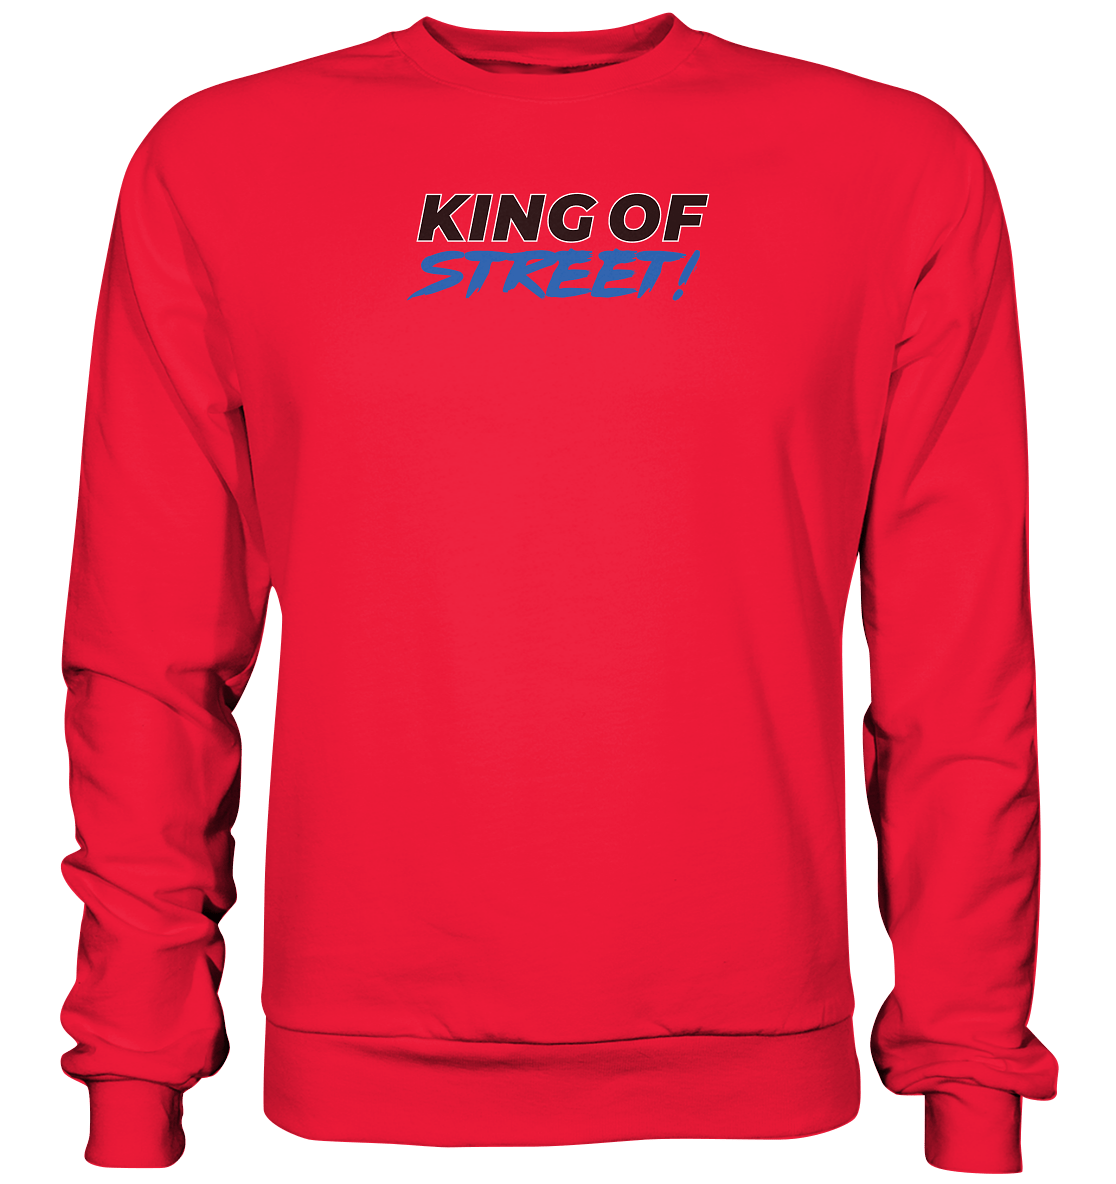 King of Street R34 - Premium Sweatshirt - MotoMerch.de